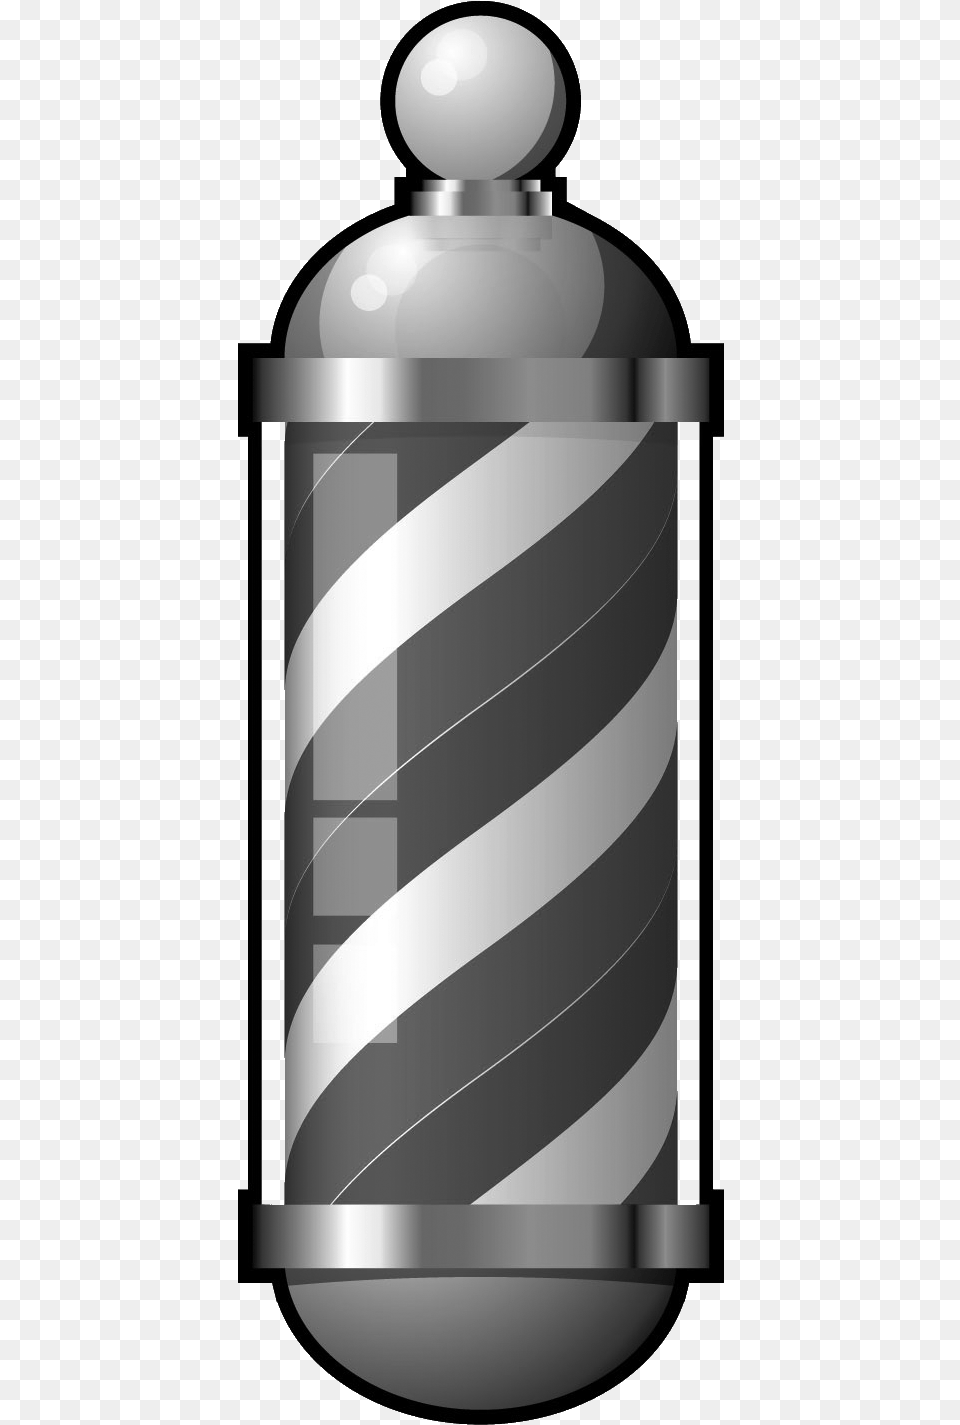 Barber Shop Clipart Barber Shop Pole, Cylinder, Jar, Bottle, Cosmetics Png Image